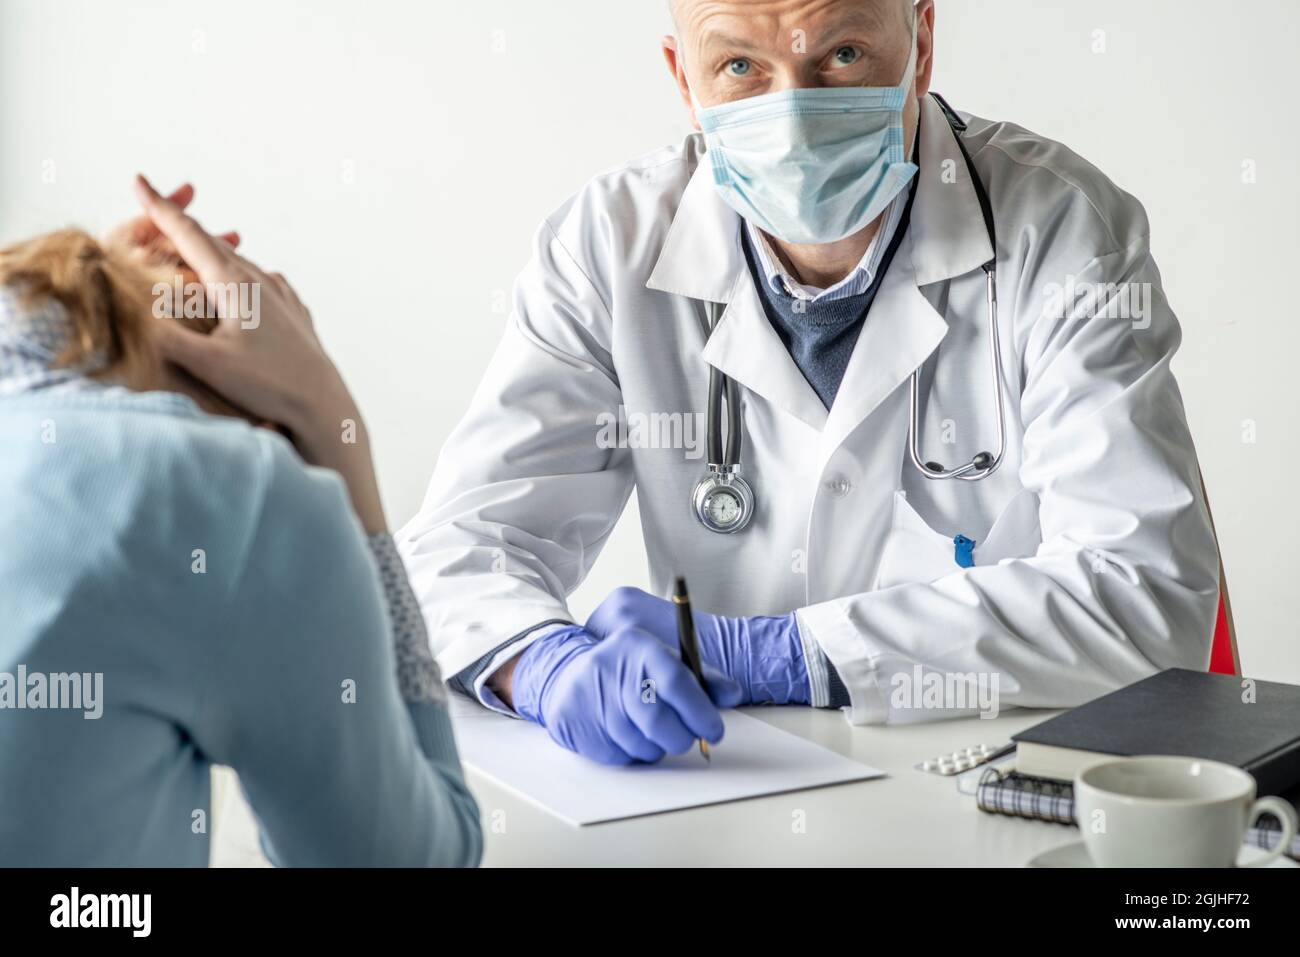 Covid-19, Prävention von Viren, medizinisches Personal und Impfkonzept. Seriös zuversichtlich männlichen Arzt in weißem Mantel und medizinische Maske, trägt eine Brille, Stockfoto